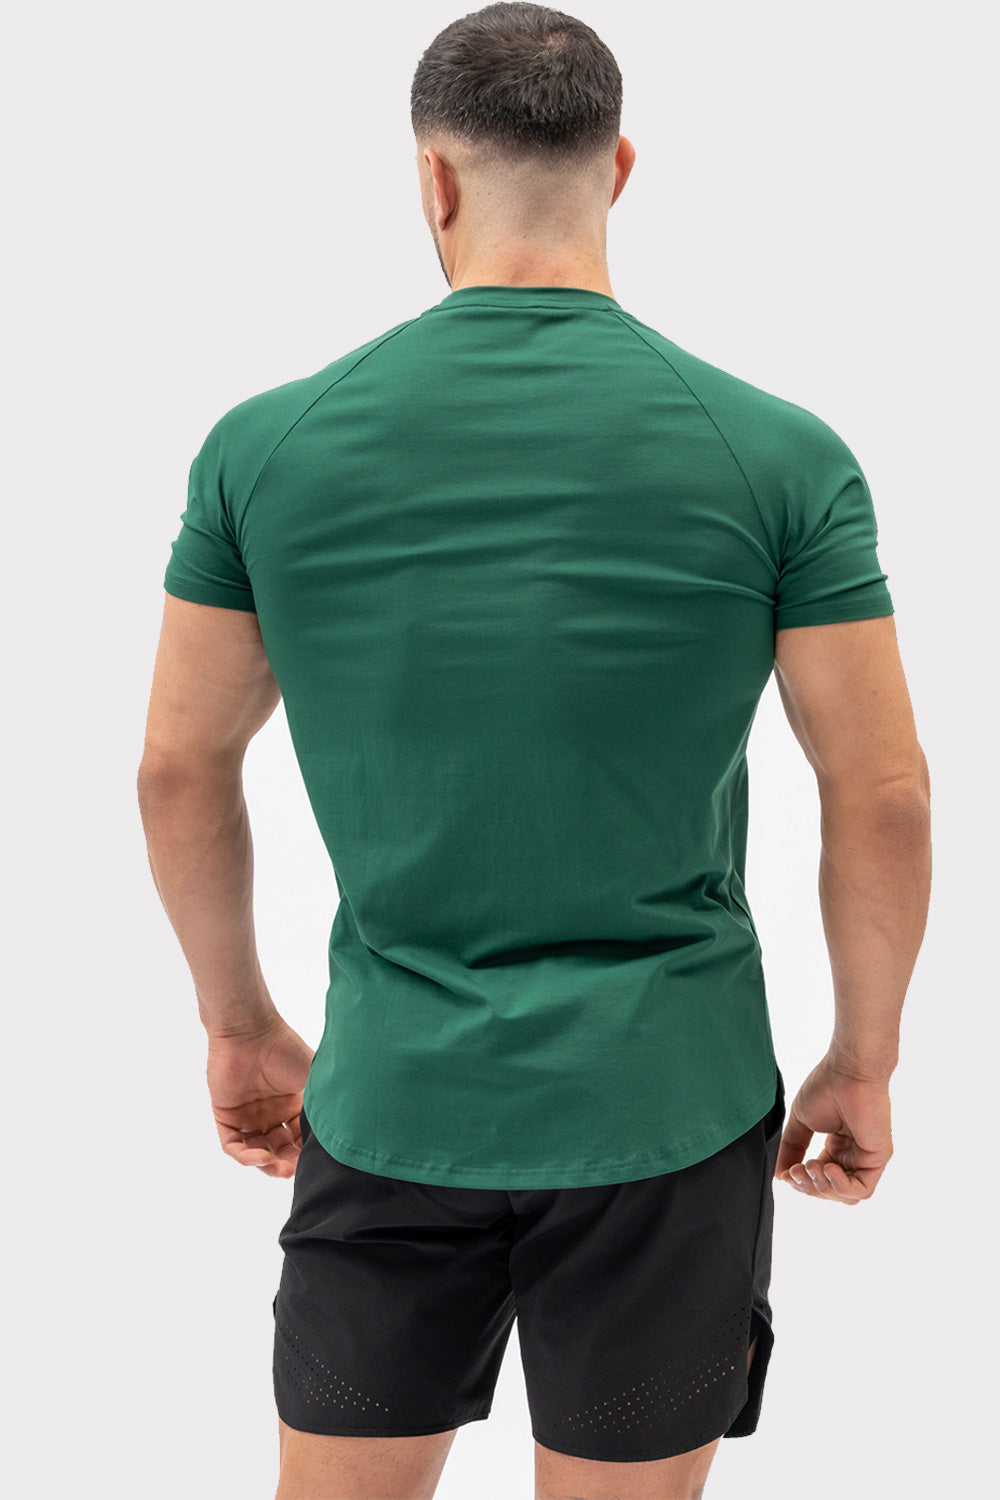 A CODE T-Shirt - Mørkegrøn